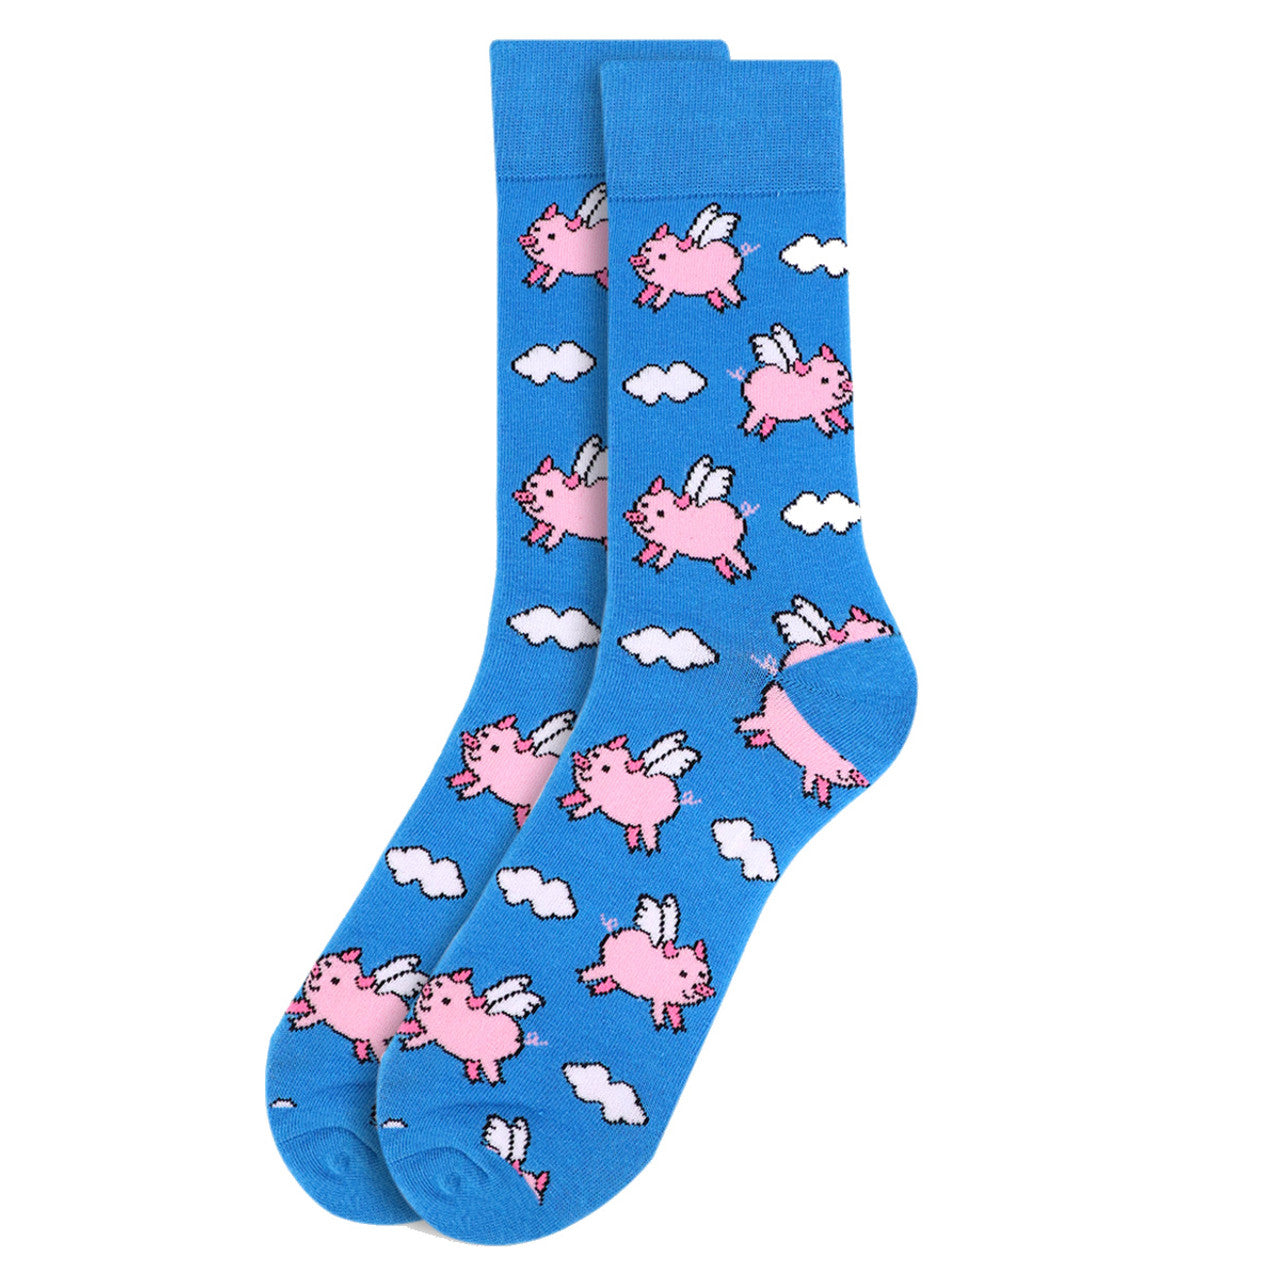 Men's When Pigs Fly Crew Socks - Blue